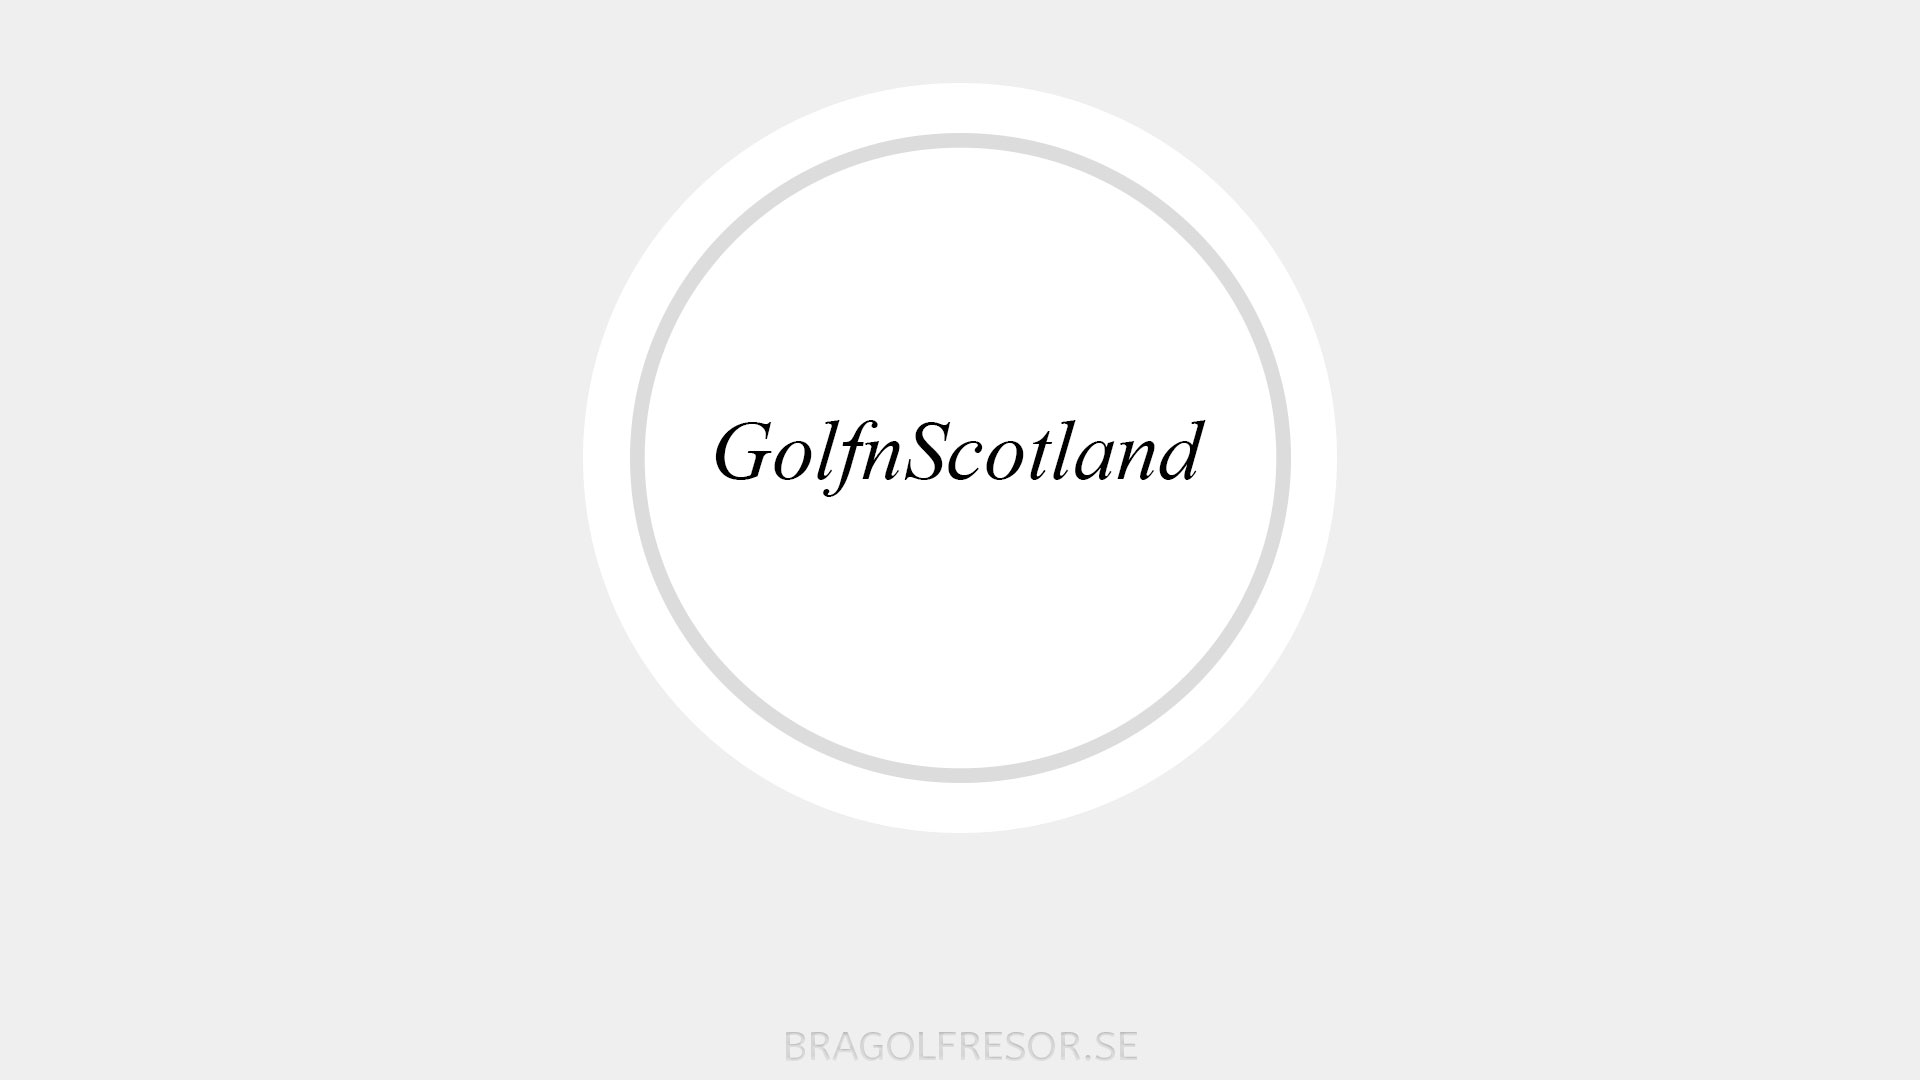 Golf n Scotland